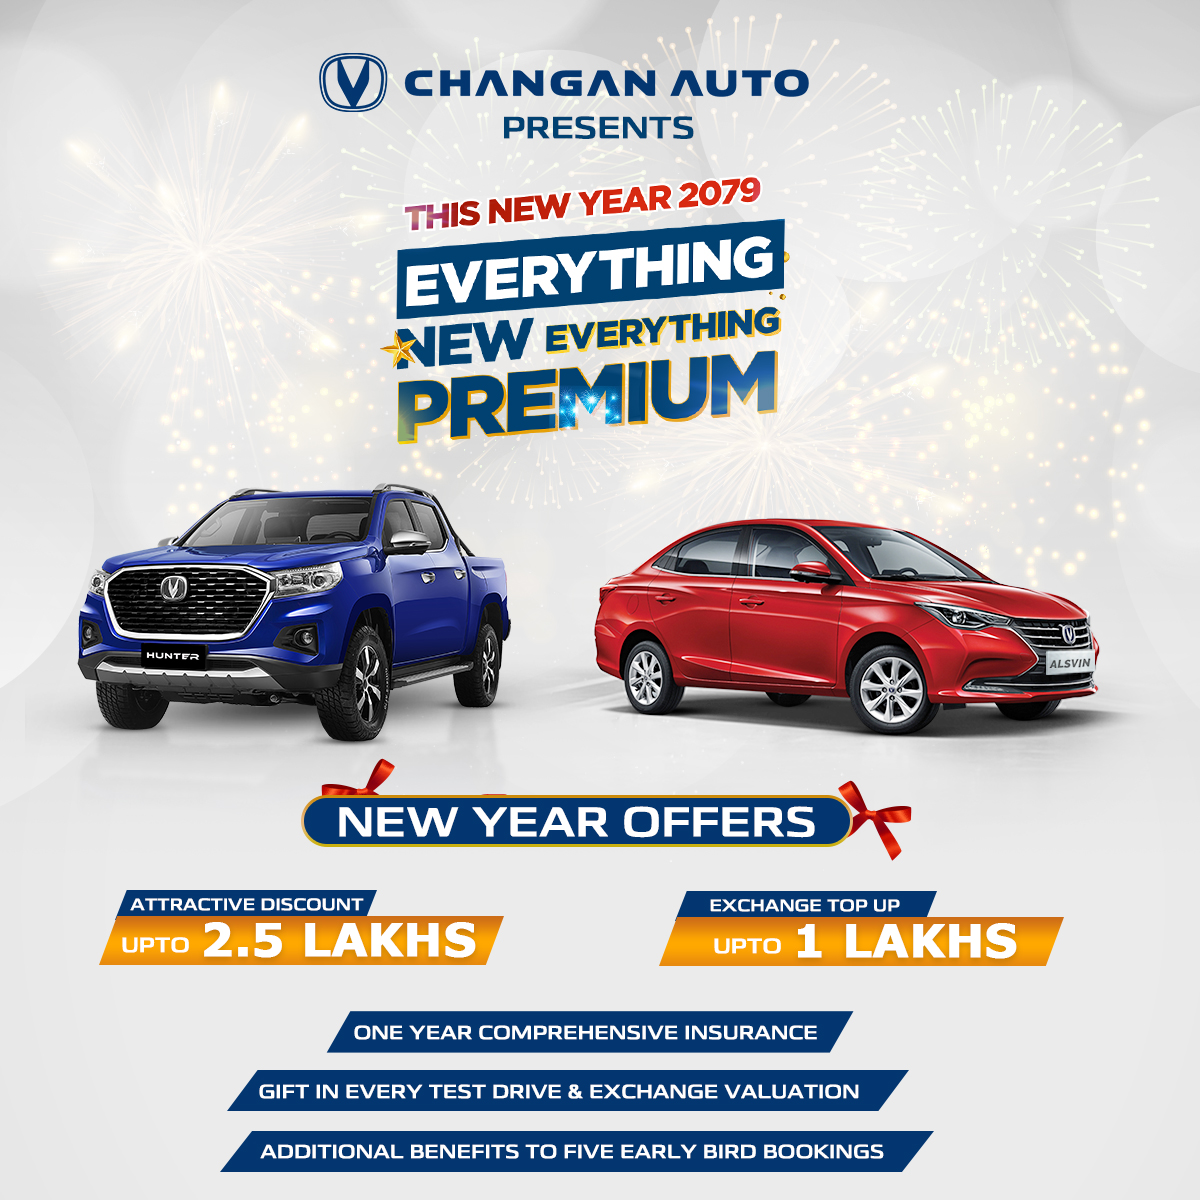 Changan Auto New Year Offer Nepal